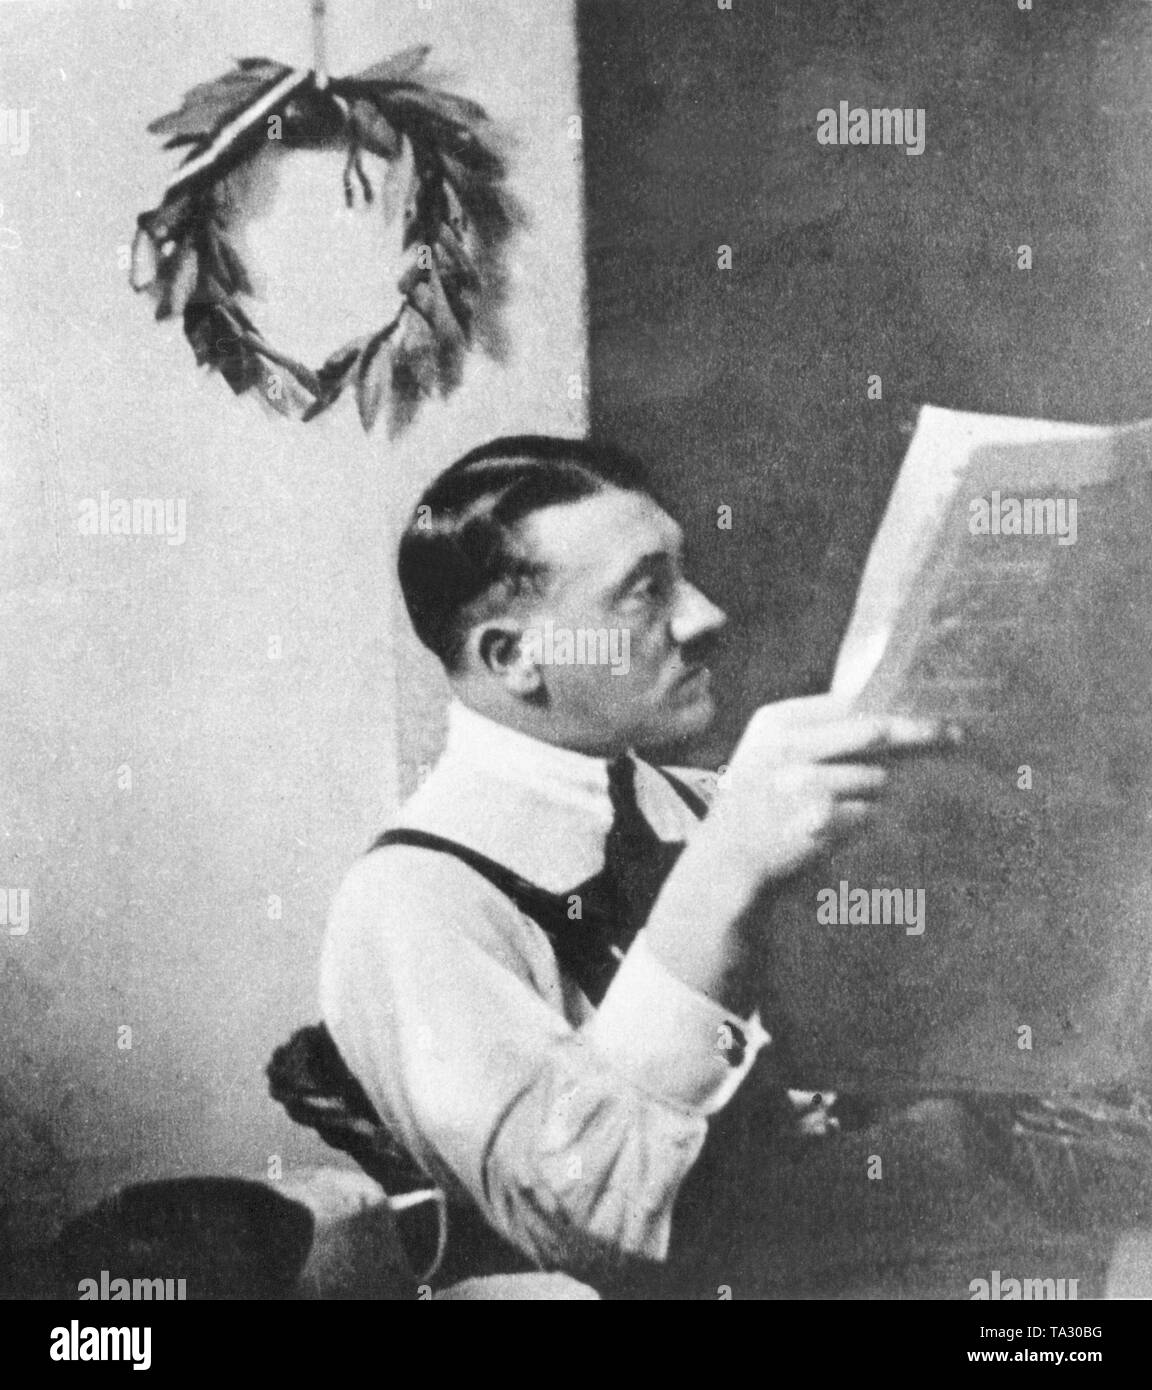 Adolf Hitler con una corona di alloro degli antichi vincitori, pieno di simbolismi, appeso alla parete nella sua cella nella prigione di Landsberg am Lech, dove ha servito la sua frase poco dopo il fallito tentativo di colpo di Stato il 9 novembre 1923 a Monaco di Baviera. Foto Stock